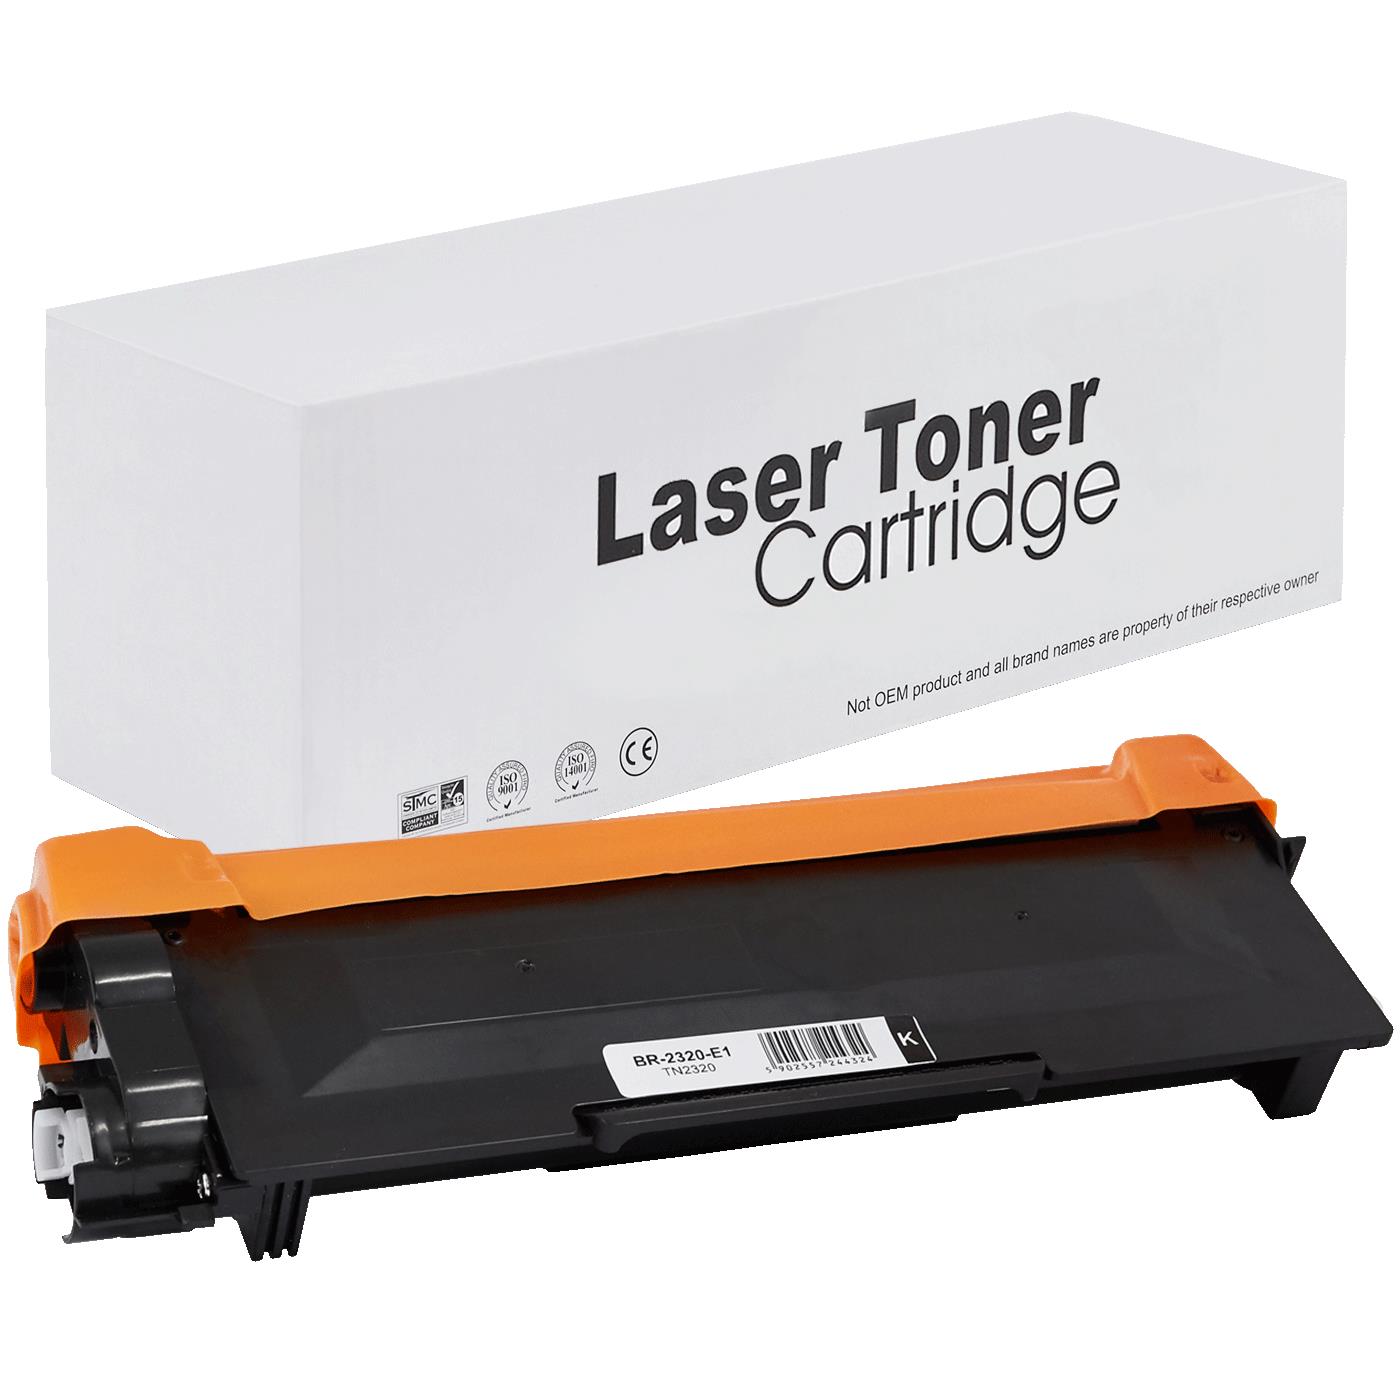 съвместима тонер касета за принтери и печатащи устройства на Brother DCP-L 2520 DW Toner BR-2320 | TN2320 / TN2310 / TN-2320. Ниски цени, прецизно изпълнение, високо качество.